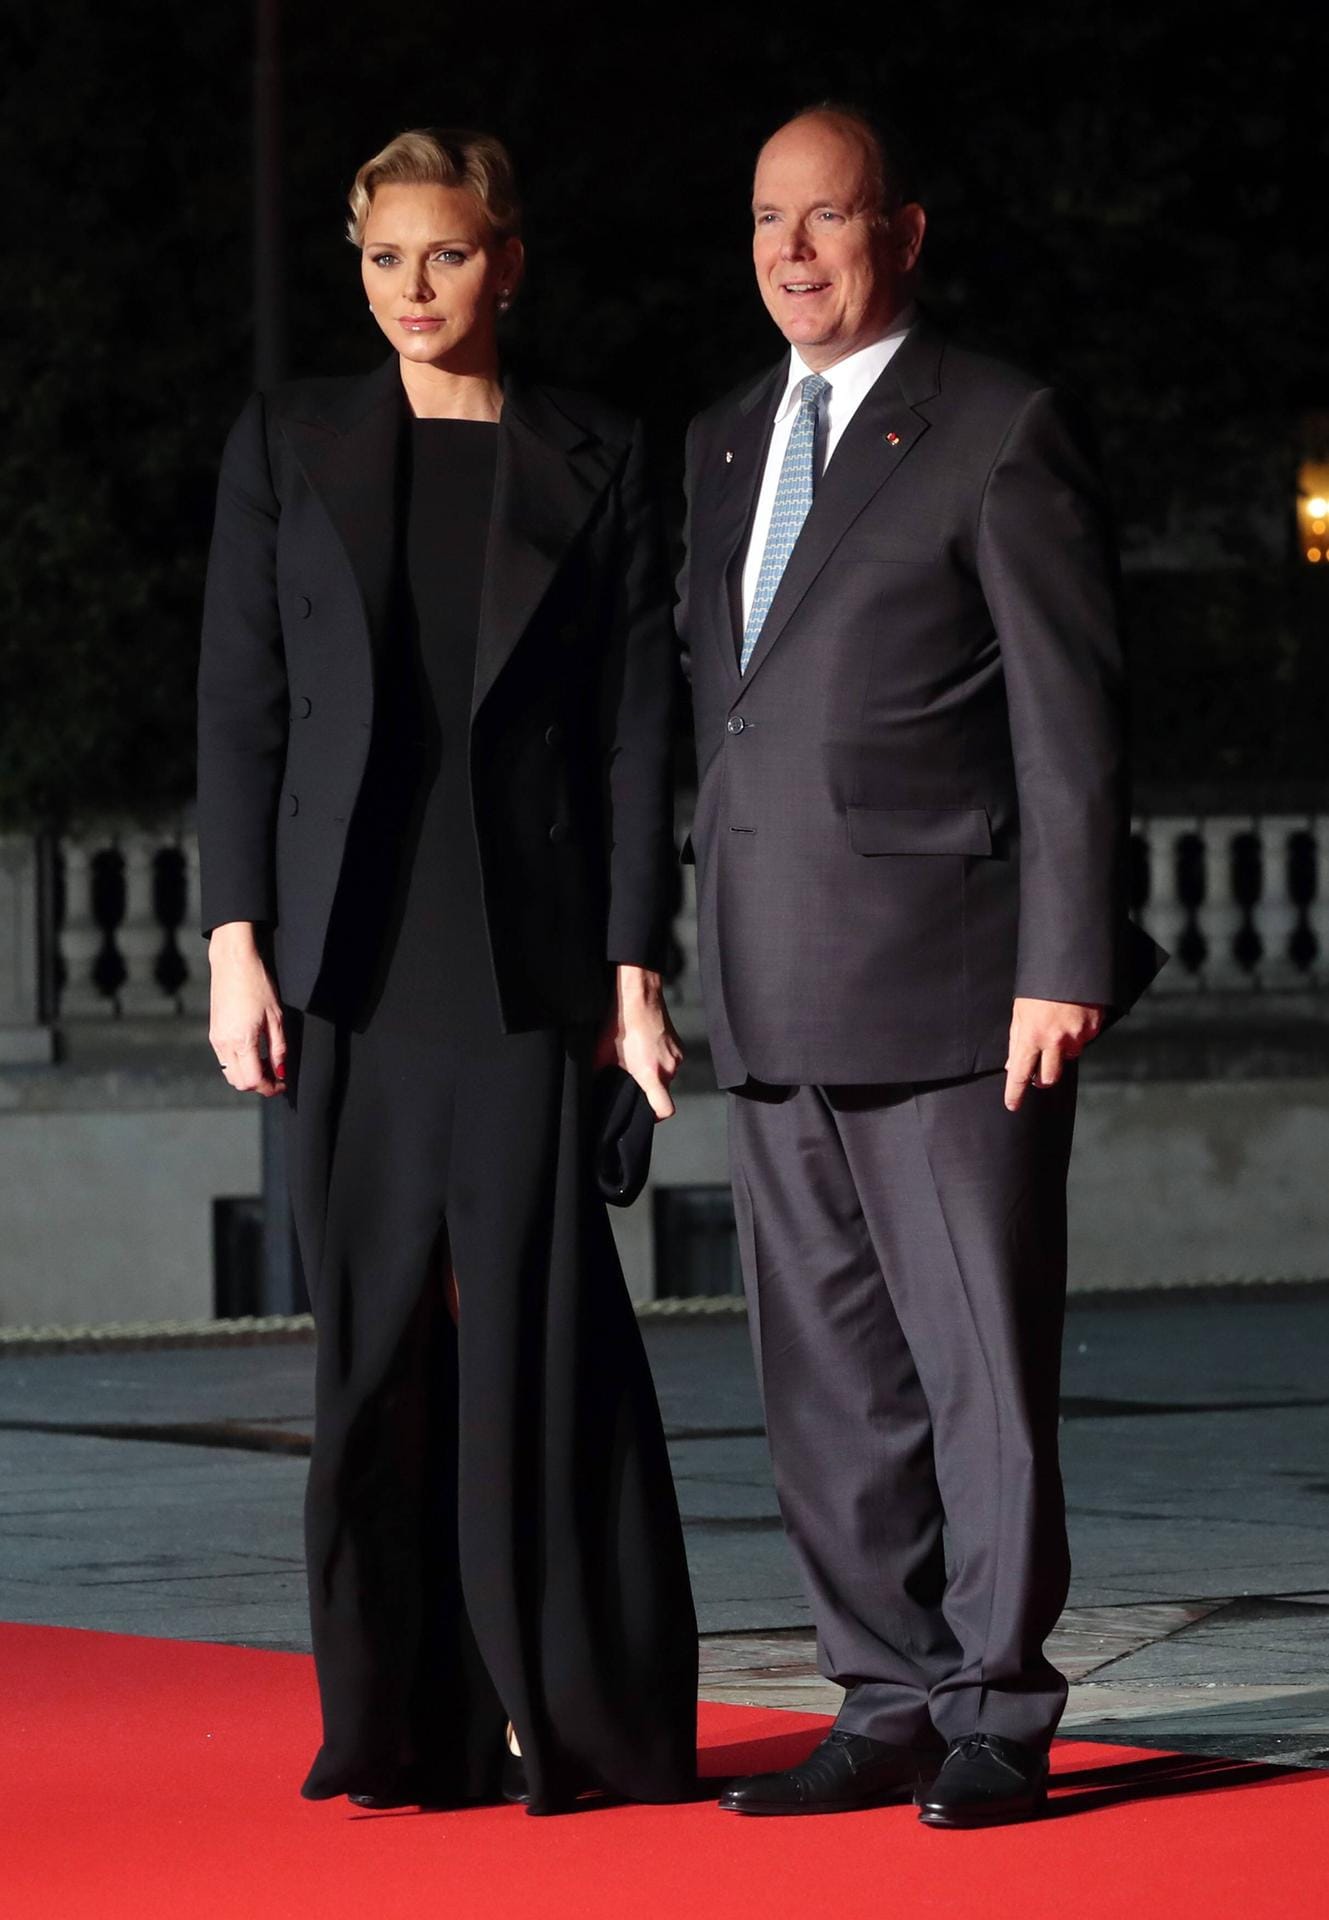 Glamour am Abend: Zum Staatsdinner in Paris erschien Charlène im schwarzen Abendkleid.